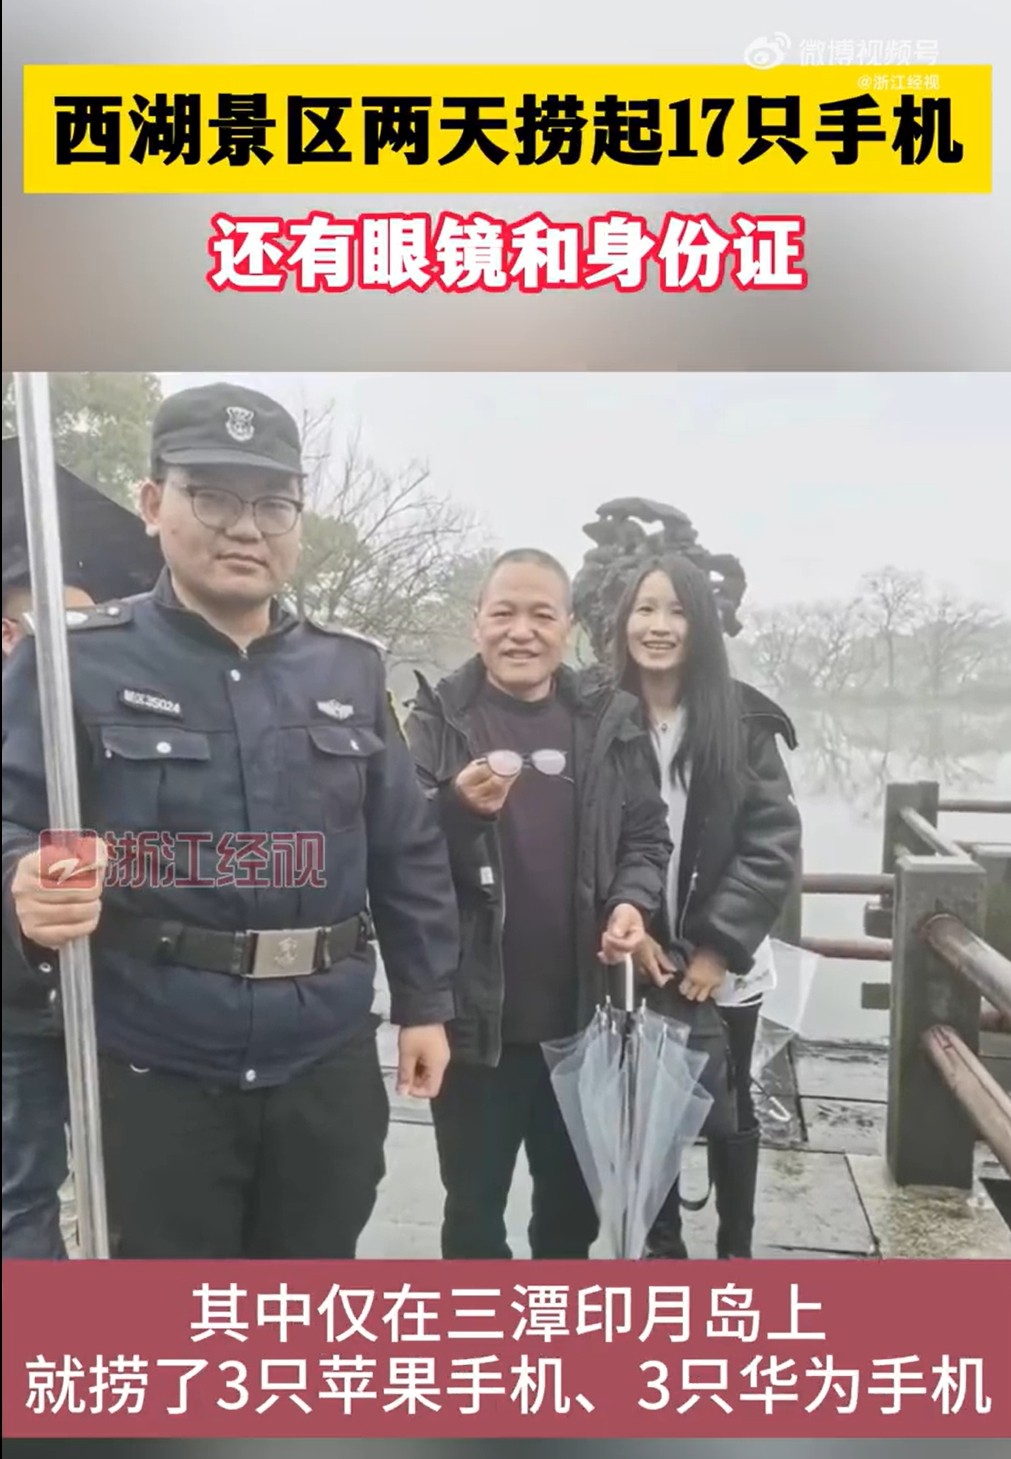 杭州西湖两天捞出17只手机 “打捞神器”再显神通3